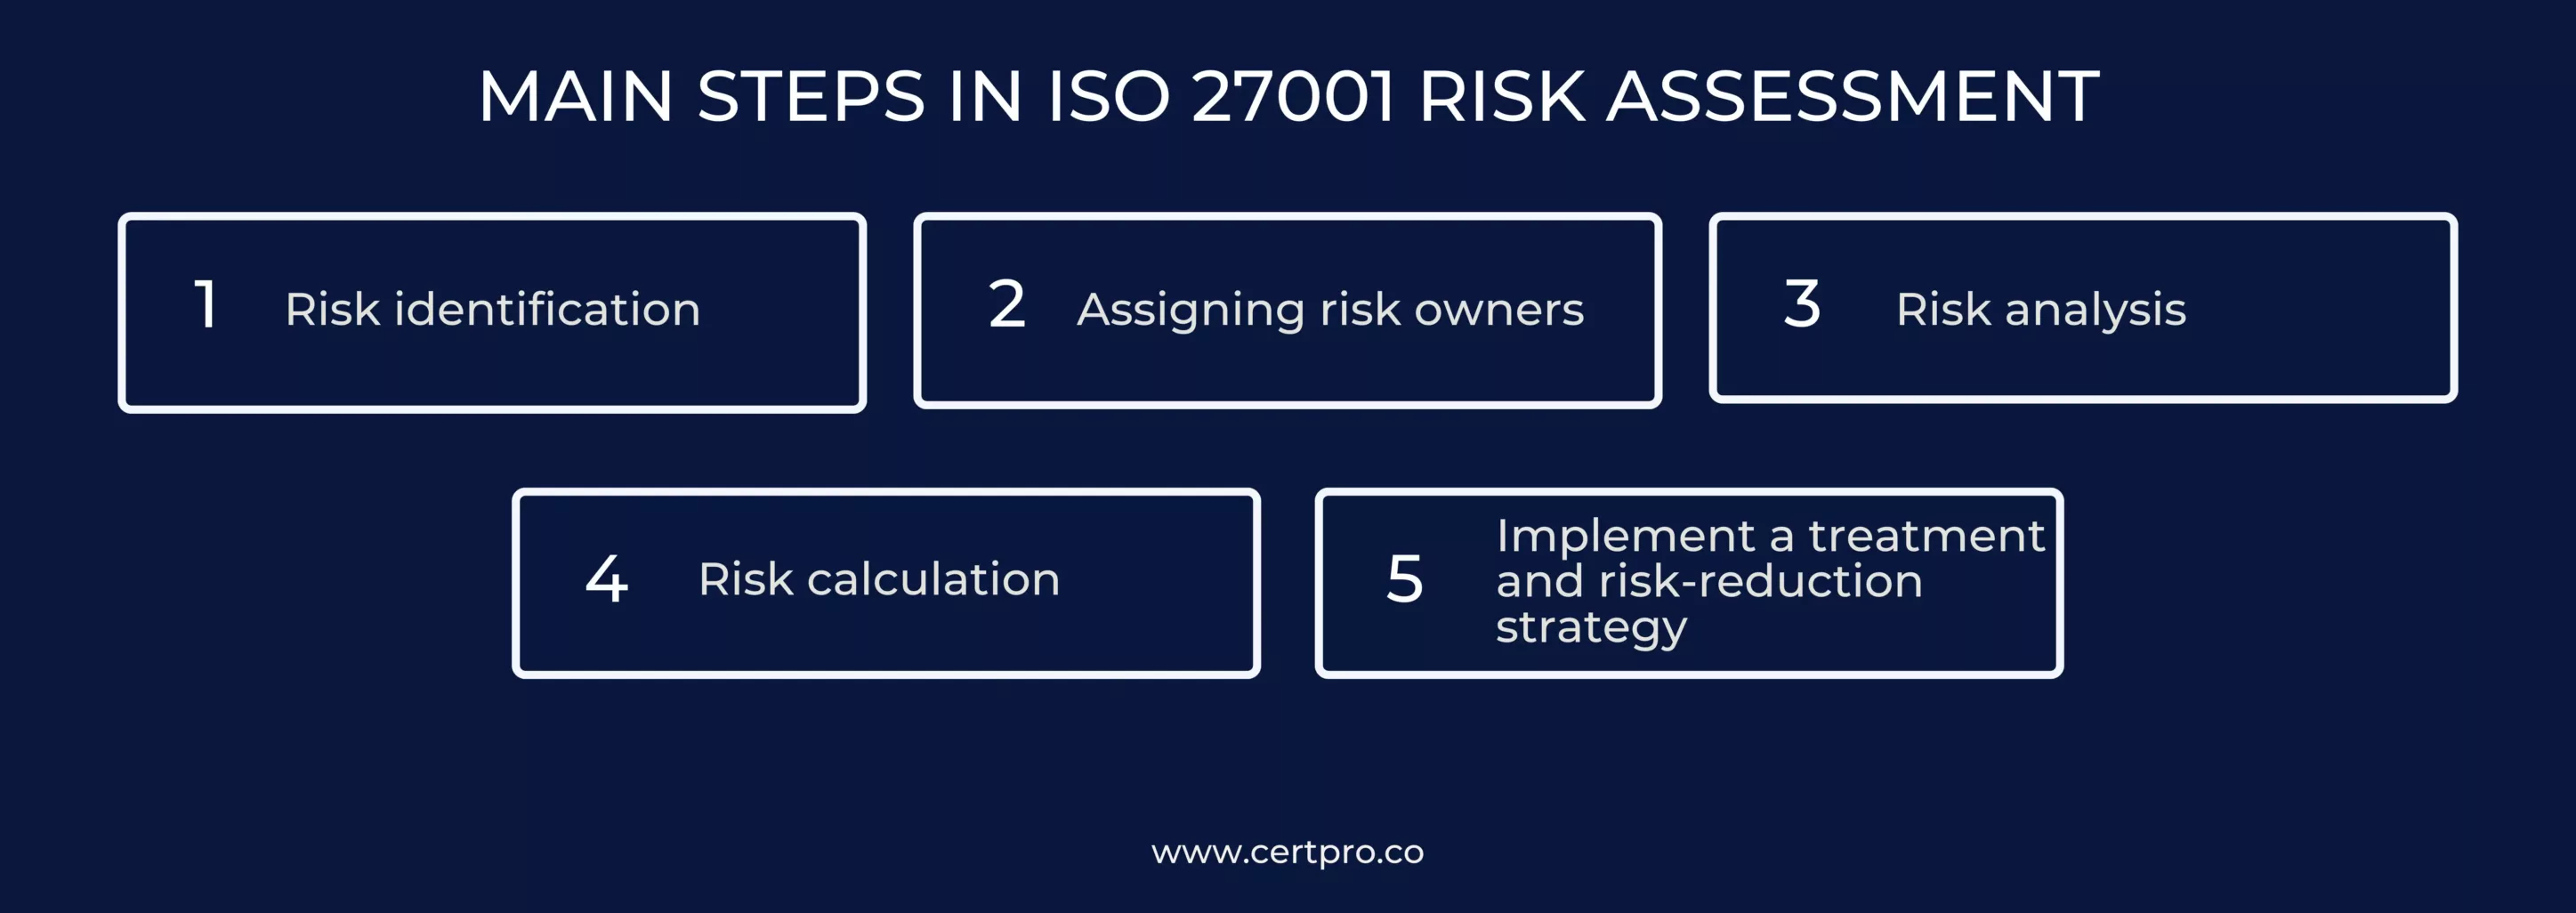 MAIN STEPS IN ISO 27001 RISK ASSESSMENT (1)